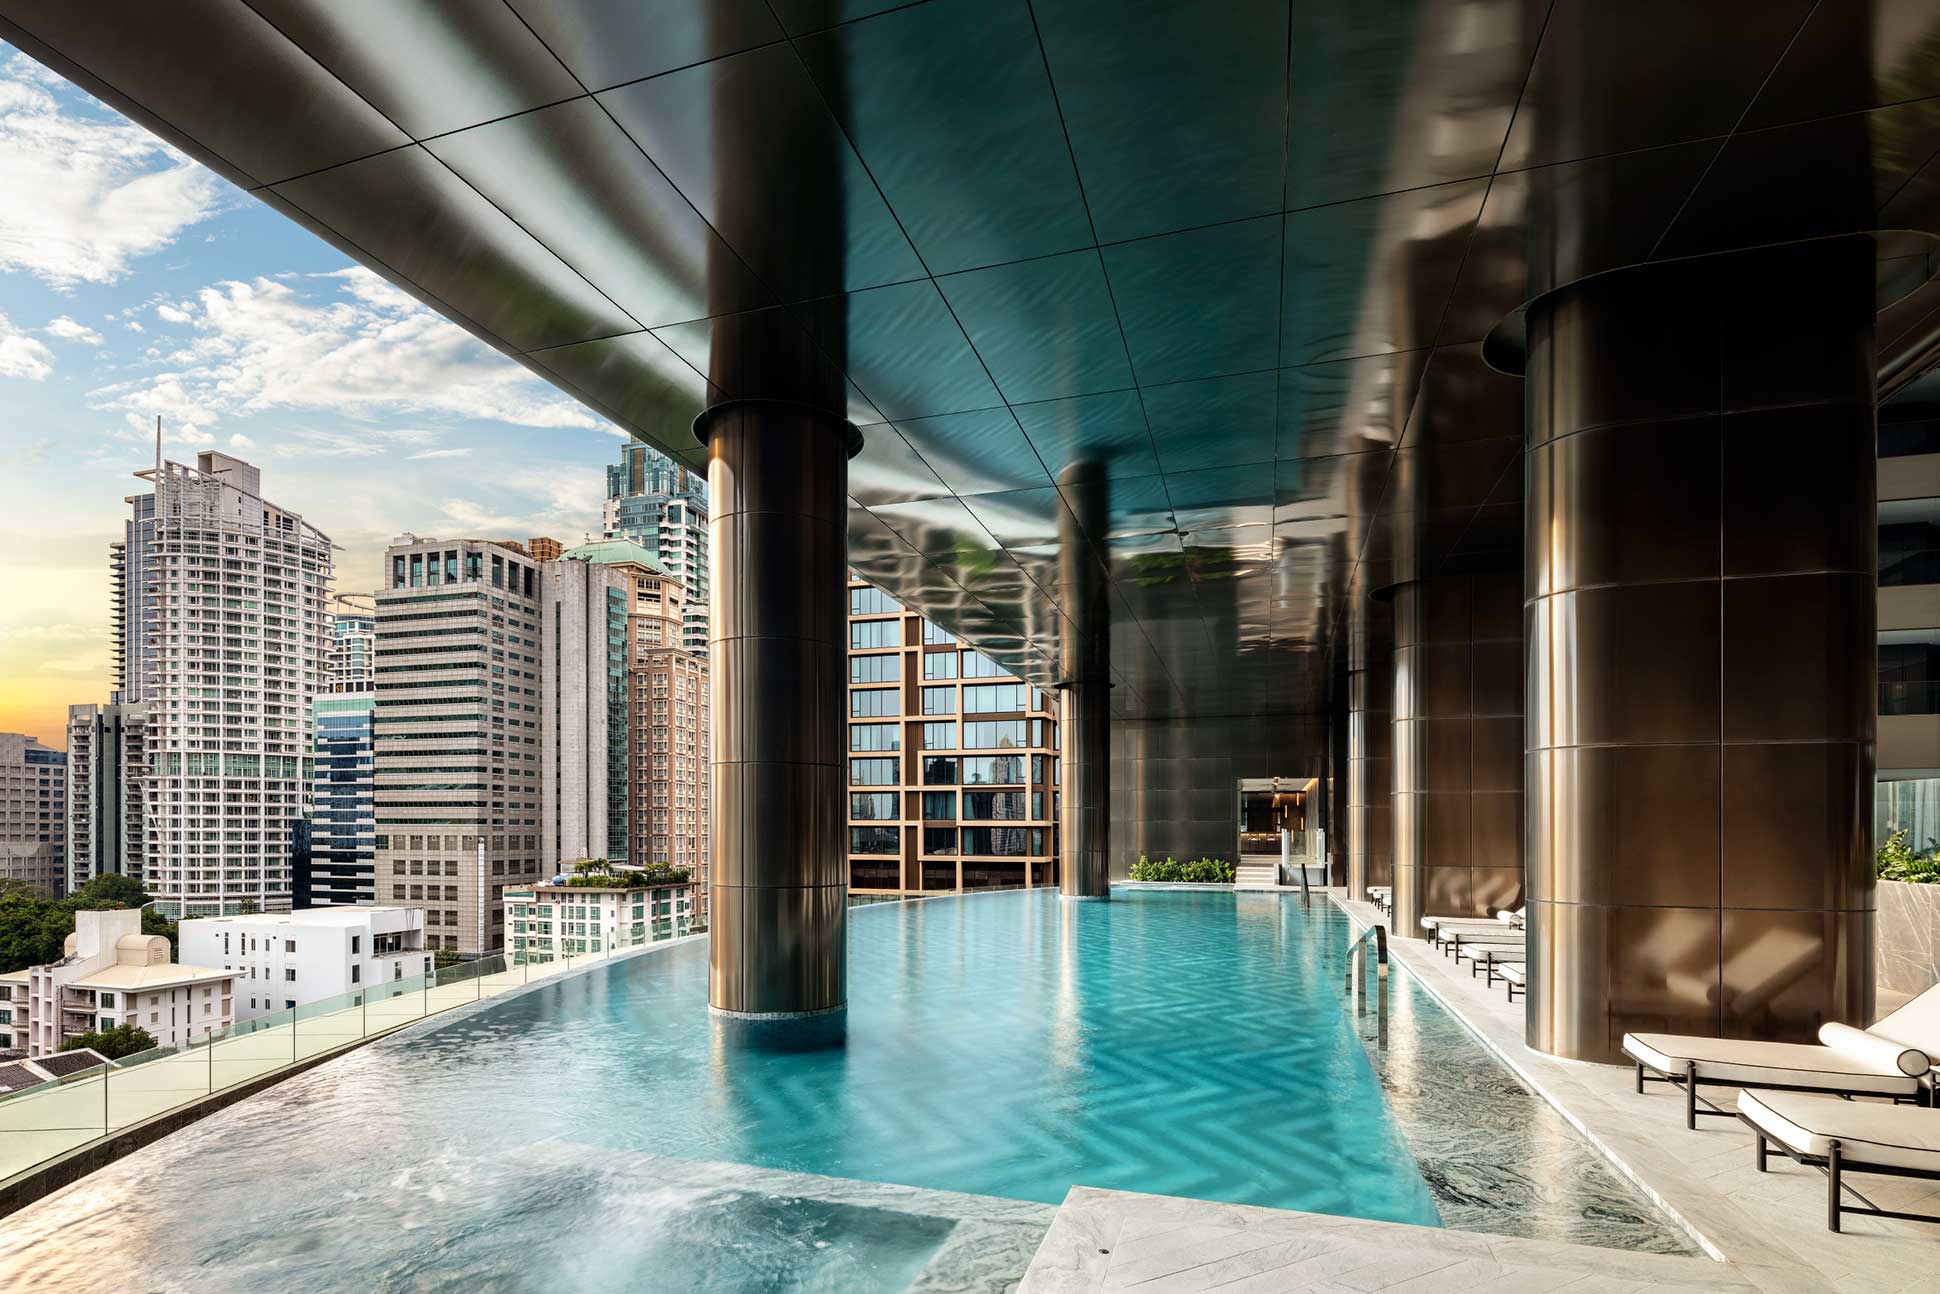 The pool at Sindhorn Wellness by Resense at the Sindhorn Kempinski Hotel Bangkok, Thailand